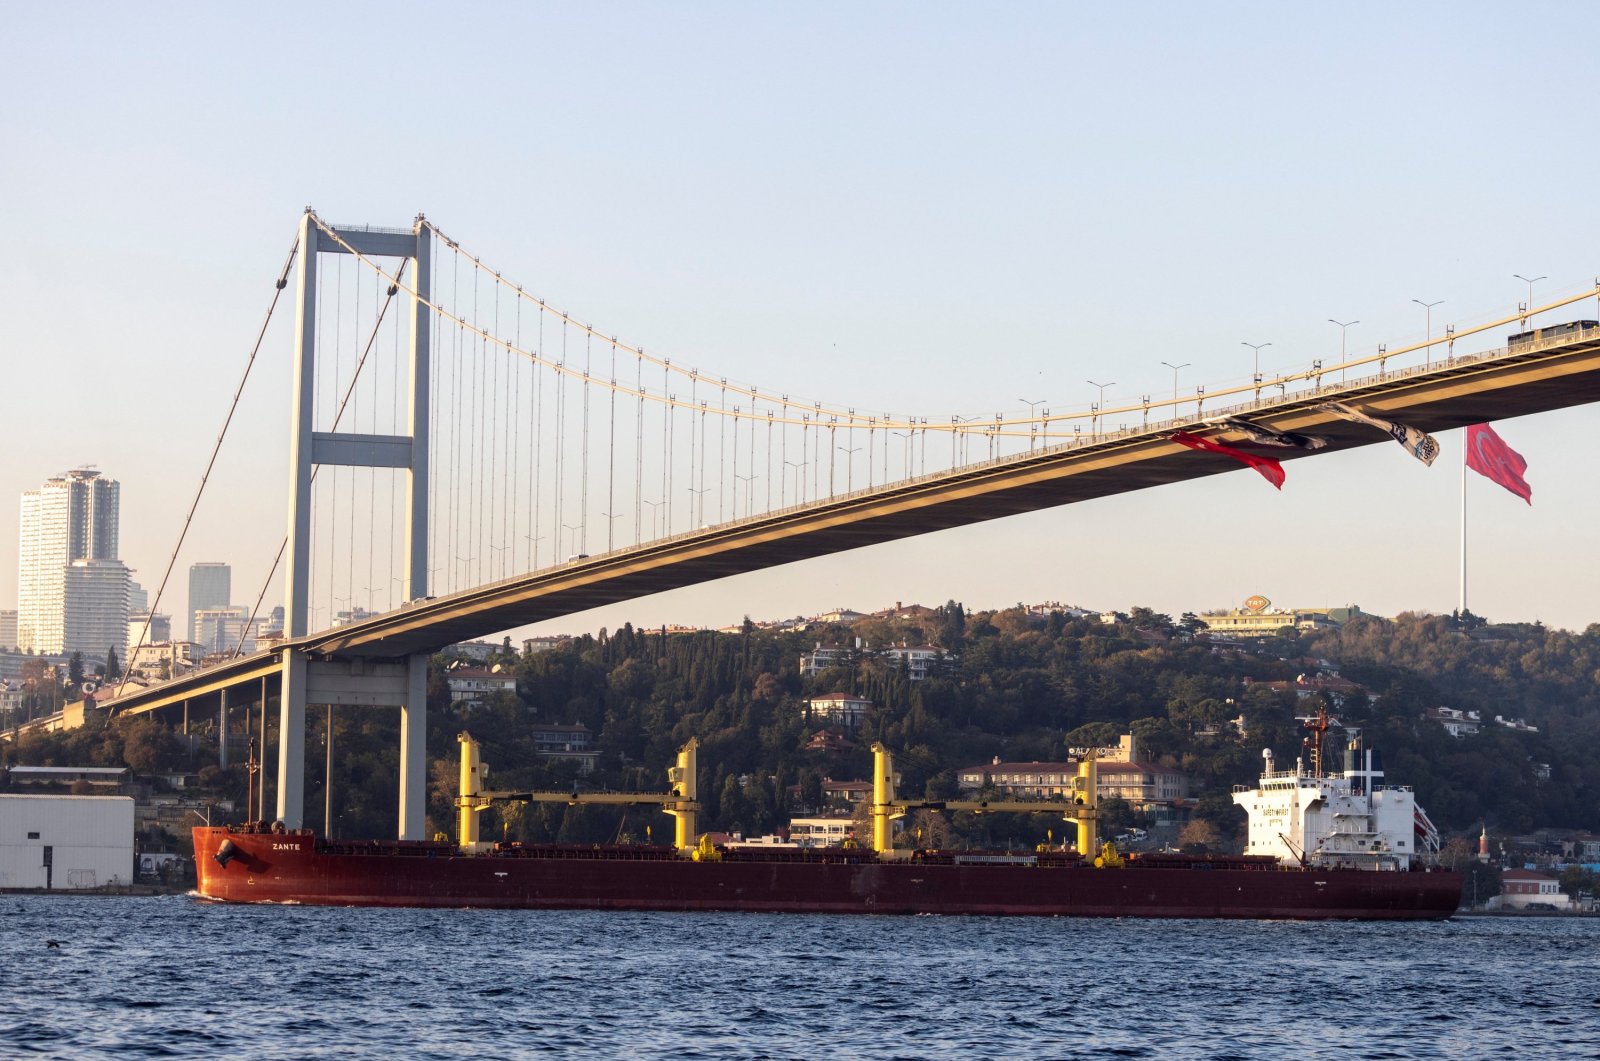 Türkiye menaikkan biaya transit di selatnya untuk kapal internasional